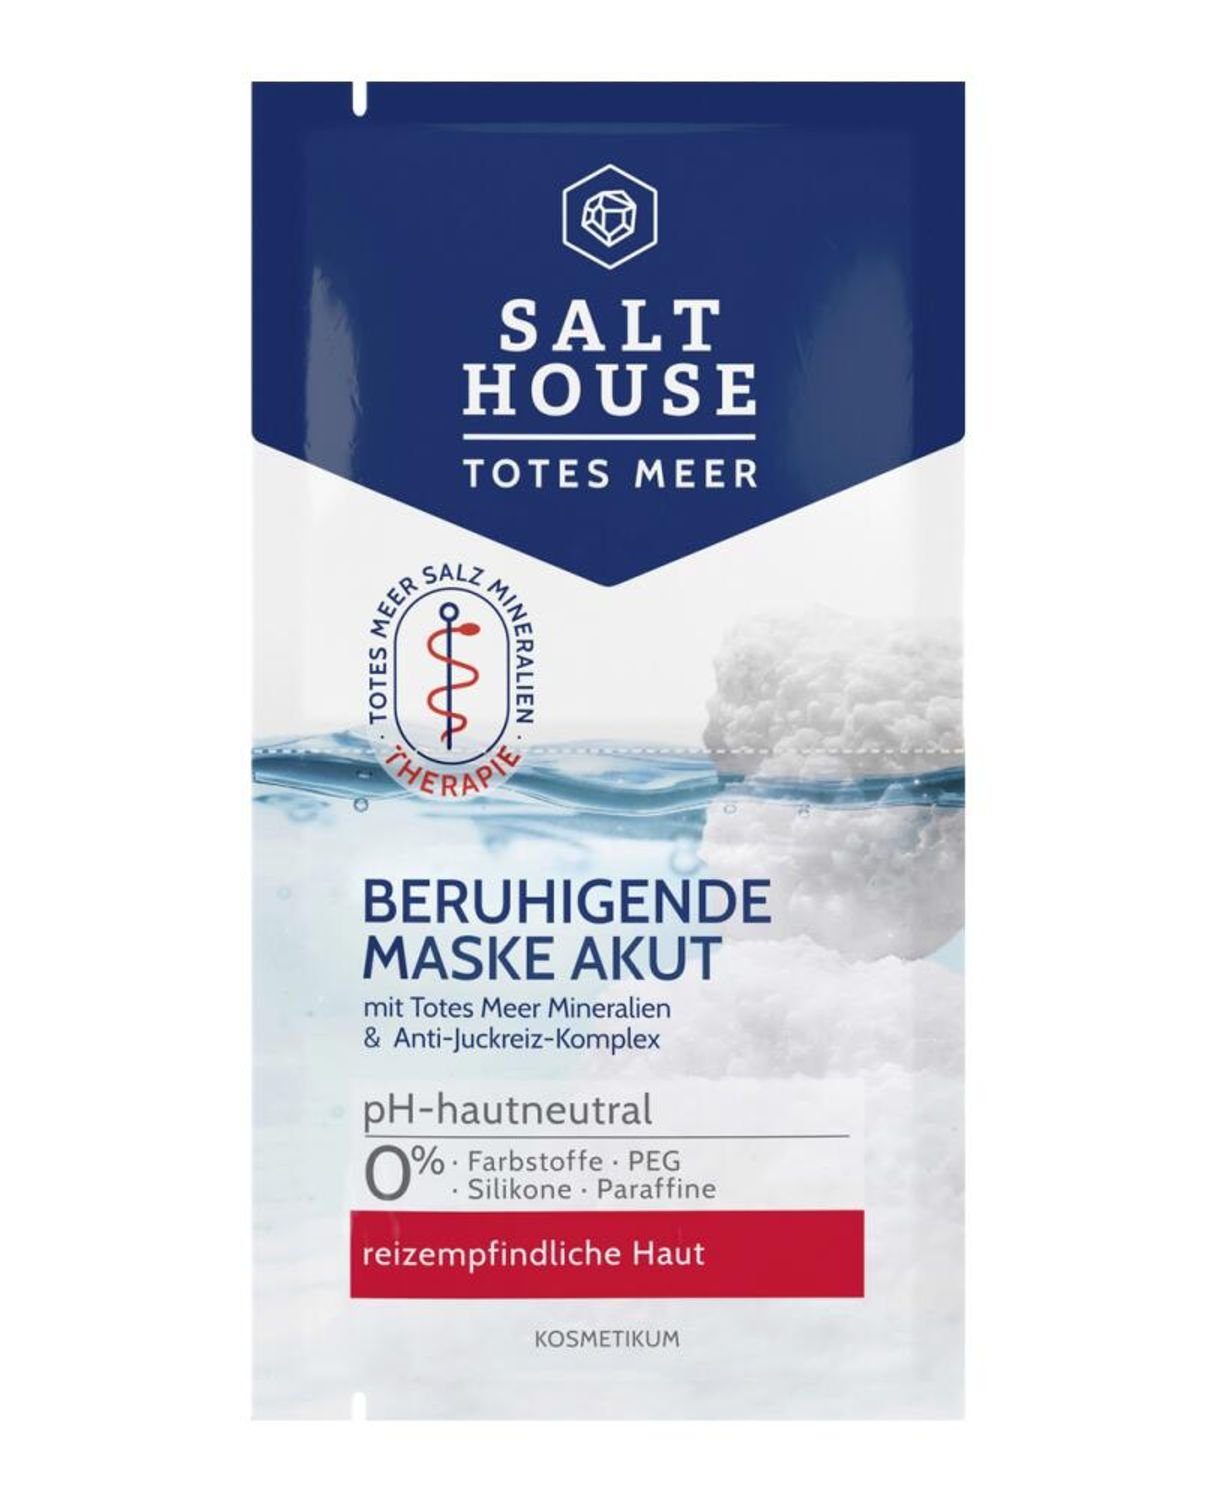 BURI Gesichts-Reinigungsmaske 15x Salthouse Gesichtsmaske Totes Meer 2x7ml Reinigung Beruhigend Set, 15-tlg.